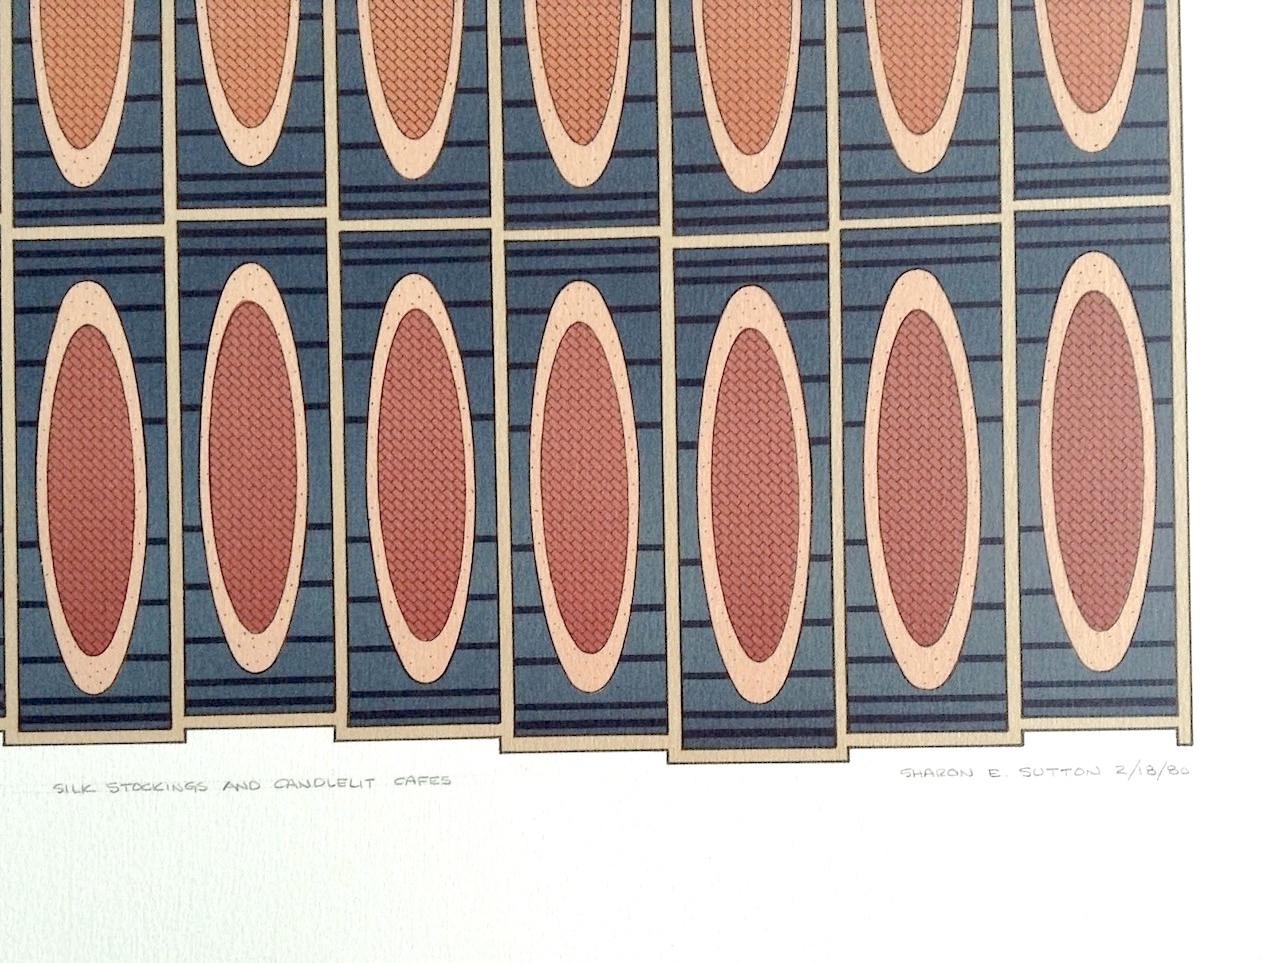 SILK STOCKINGS, CANDLELIT CAFES Signierte Lithographie, Geometrisches abstraktes Muster  (Geometrische Abstraktion), Print, von Sharon Sutton